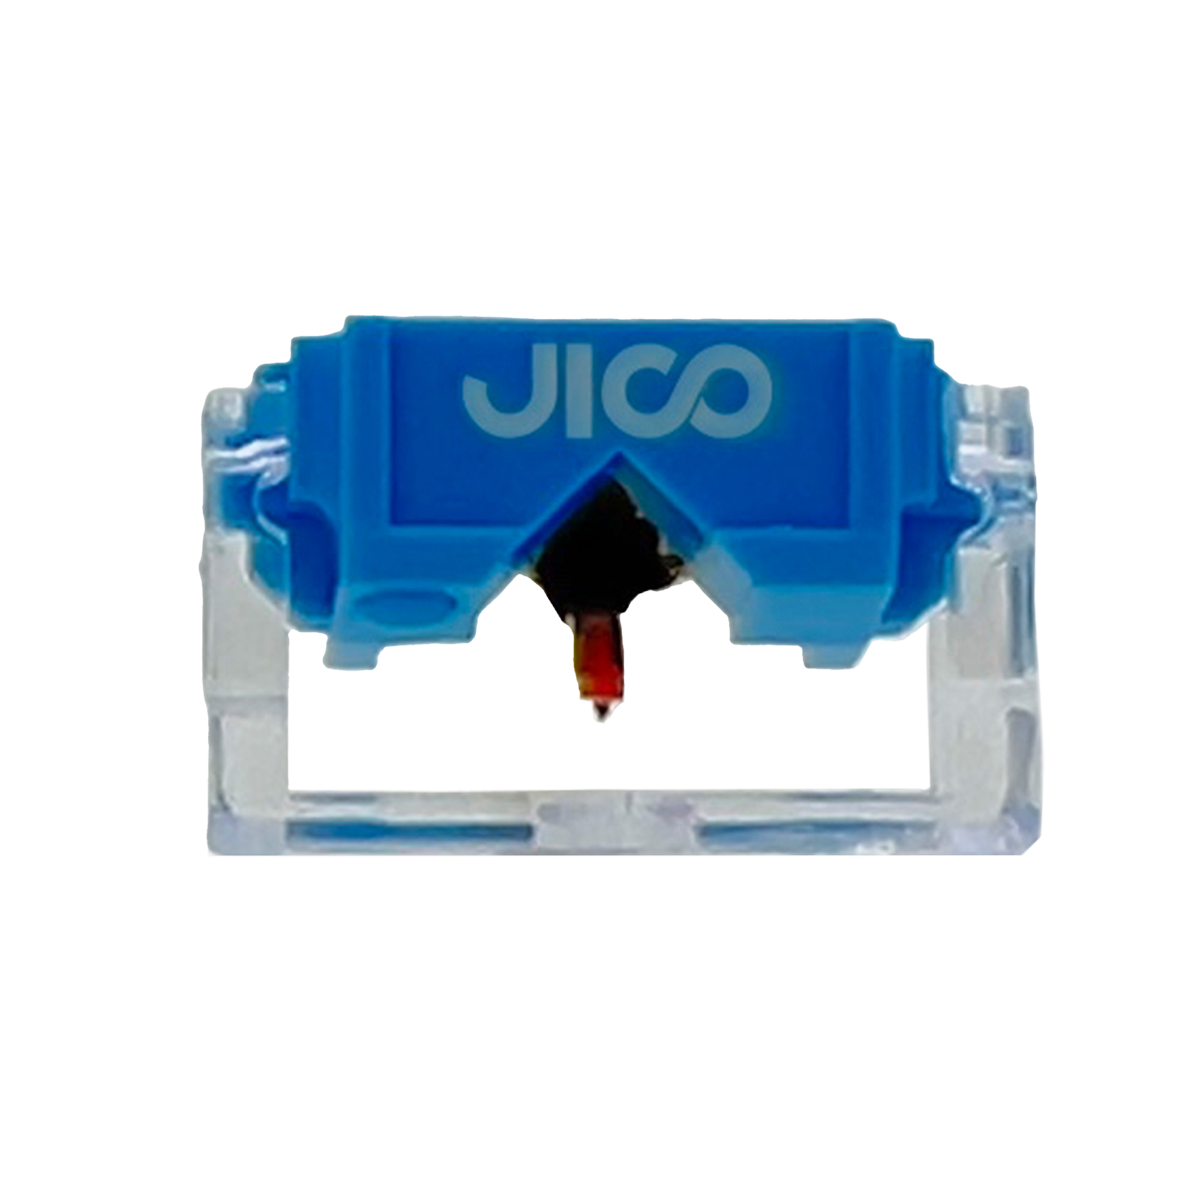 Diamants de cellules DJ - Jico - N44 7 DJ SD